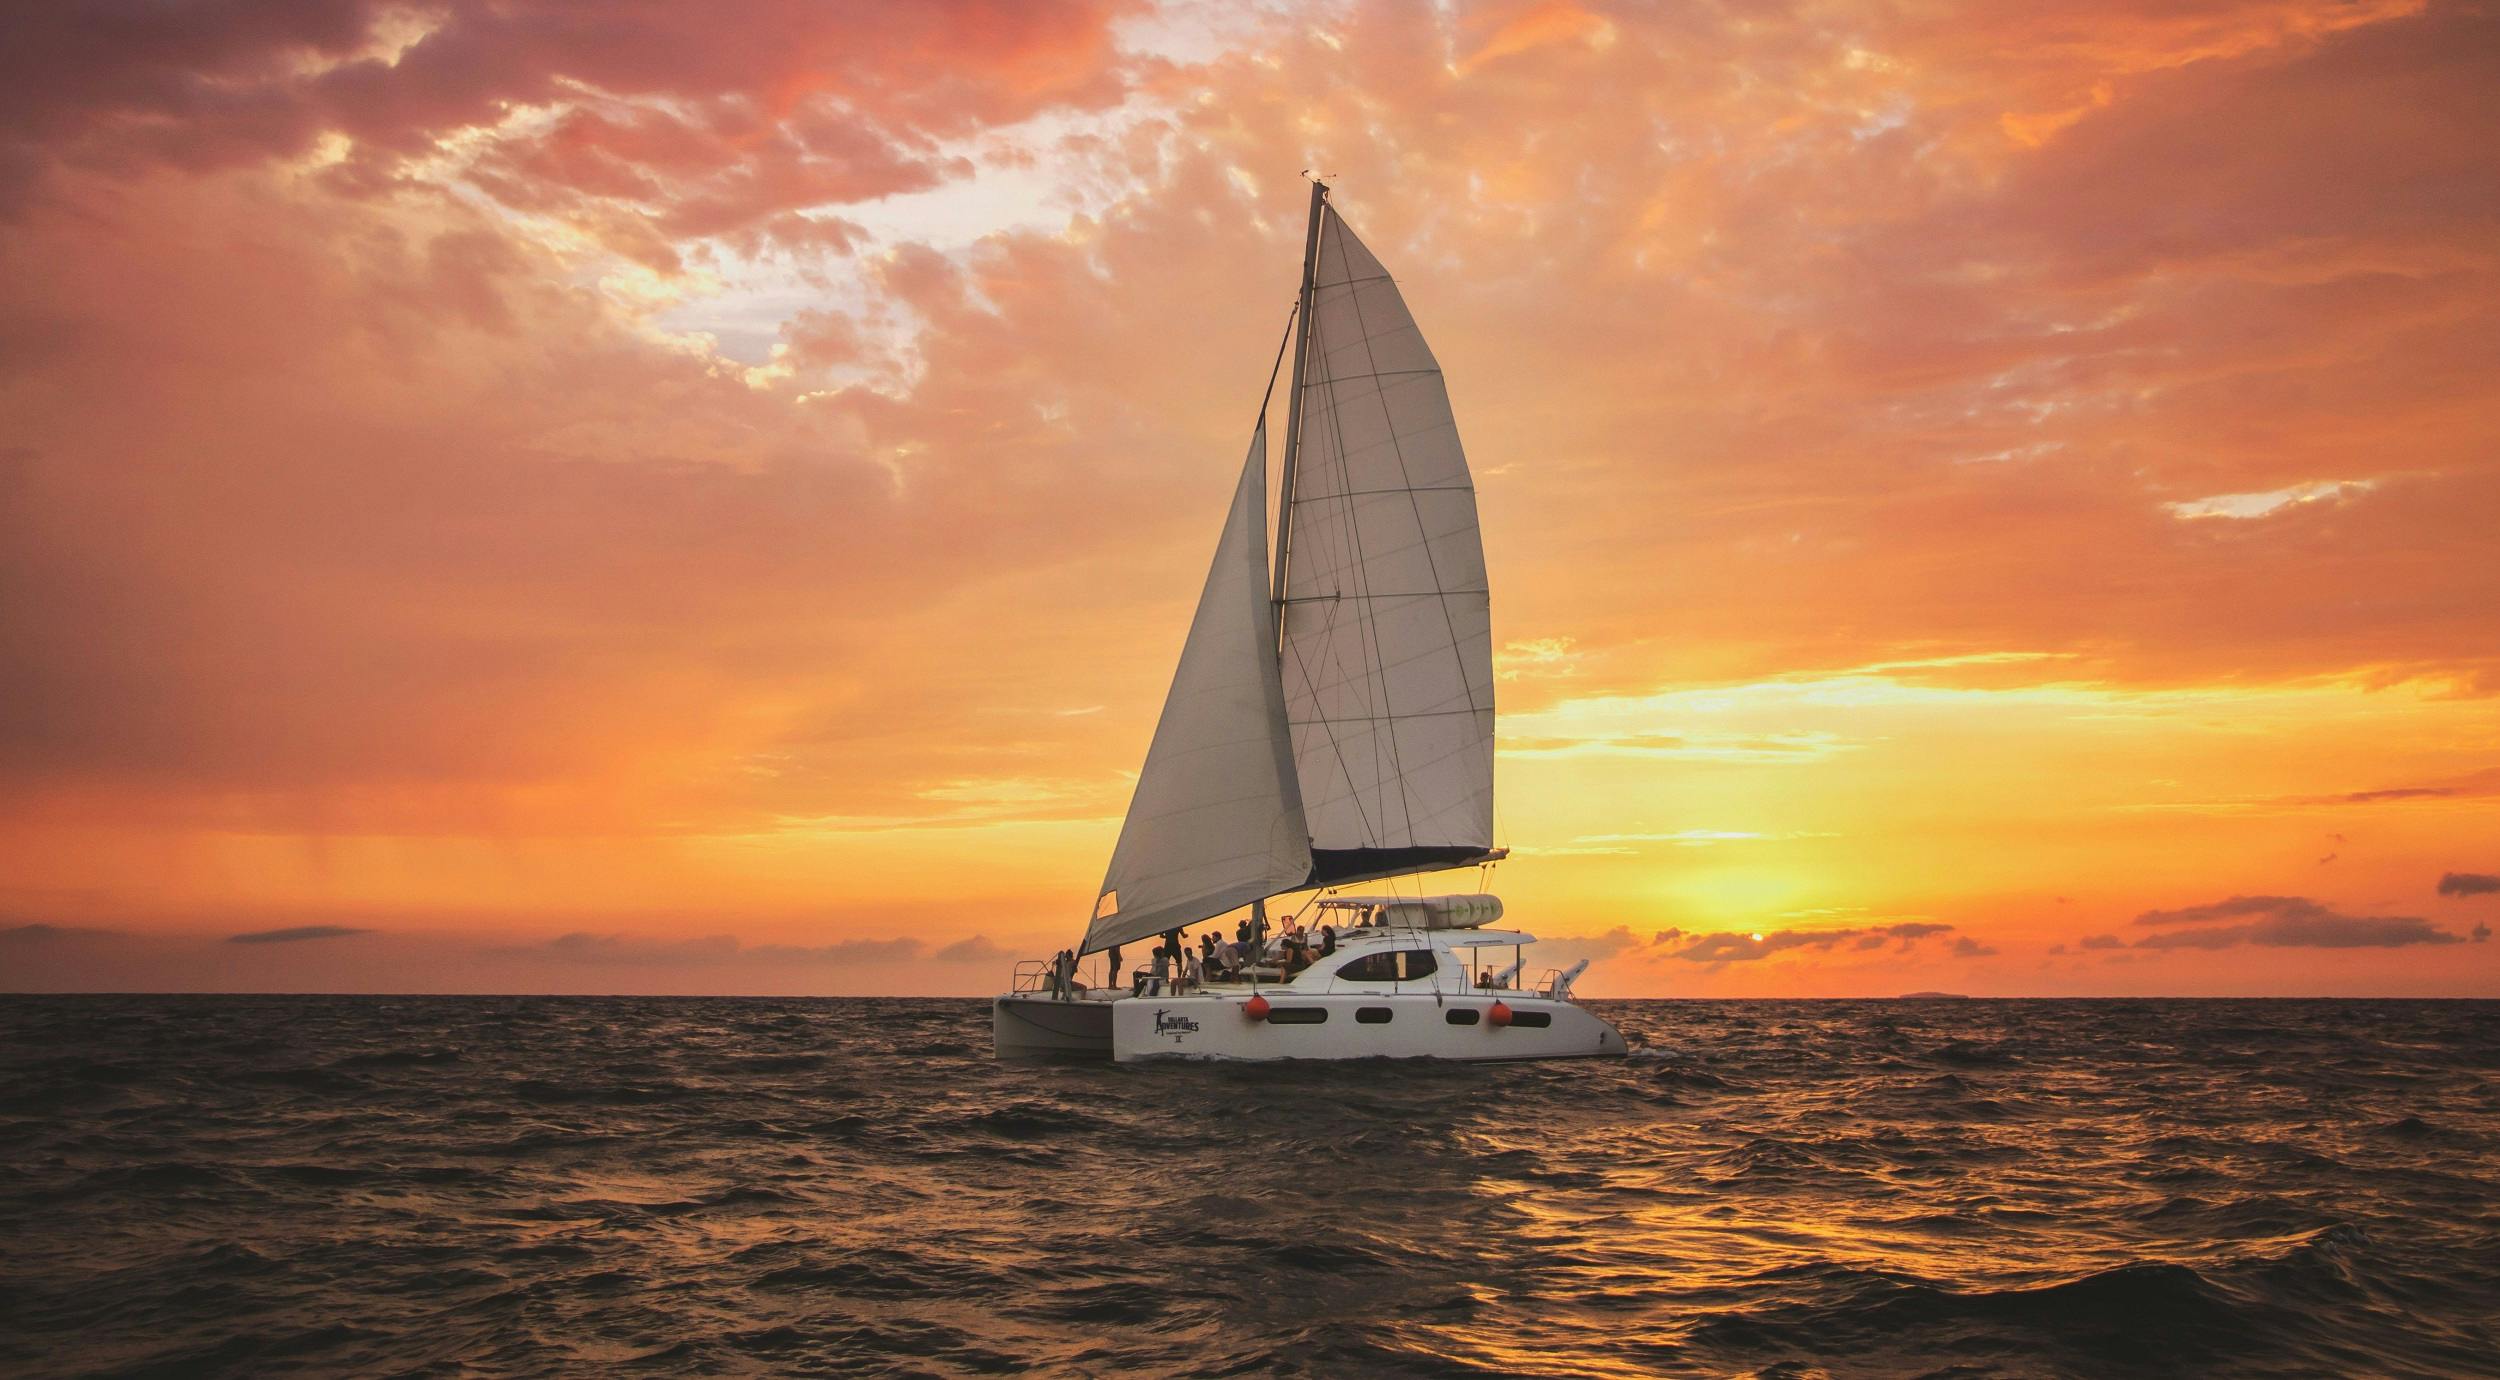 Luxury sunset sailing tour from Cancun and Riviera Maya